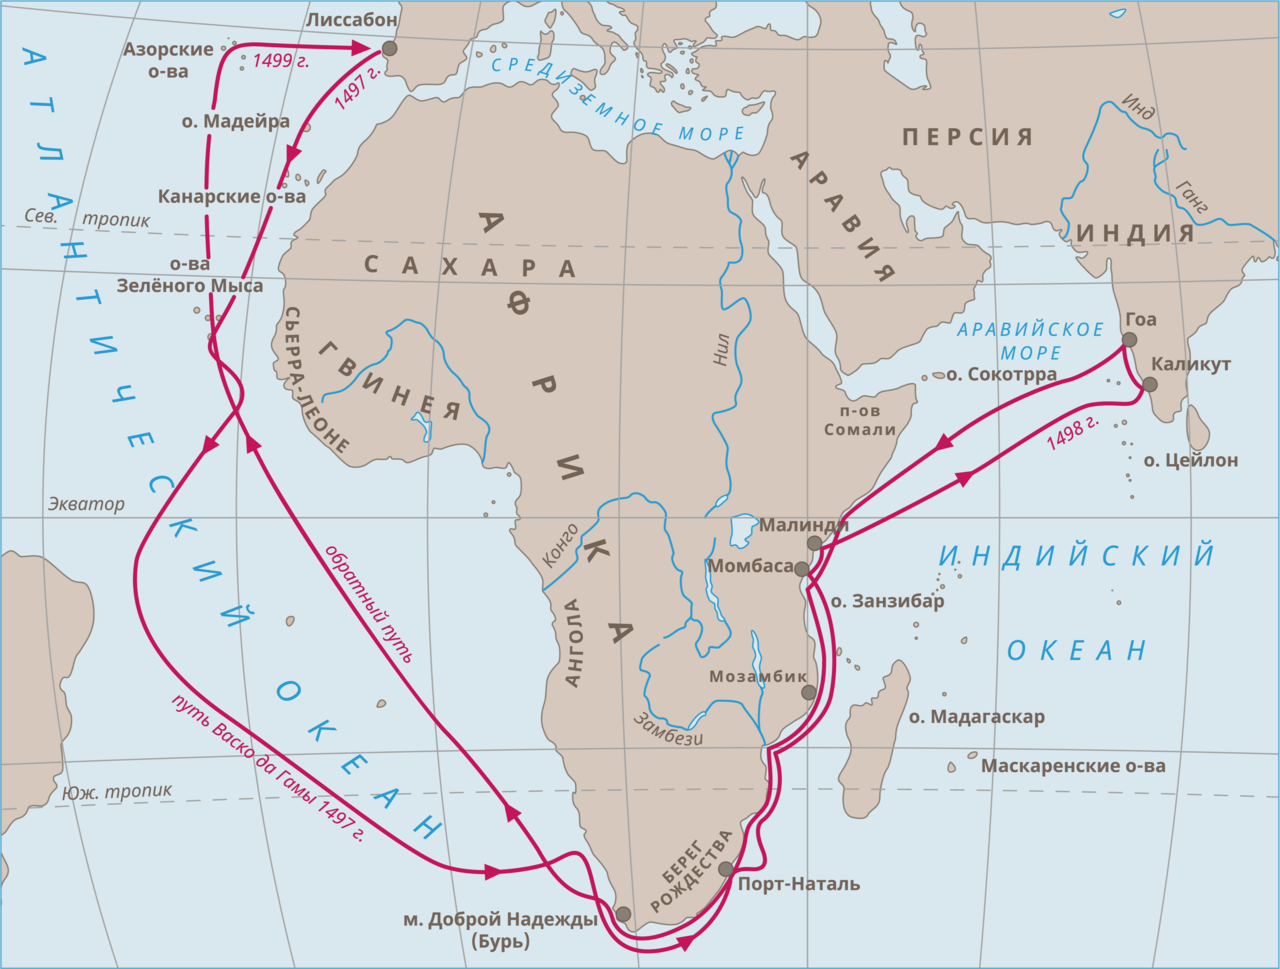 Первый путь в индию. Путь экспедиции ВАСКО да Гама в Индию. Первое путешествие ВАСКО да Гамы в Индию. Путь ВАСКО да Гама 1497-1499. Первое плавание ВАСКО да Гама в Индию.